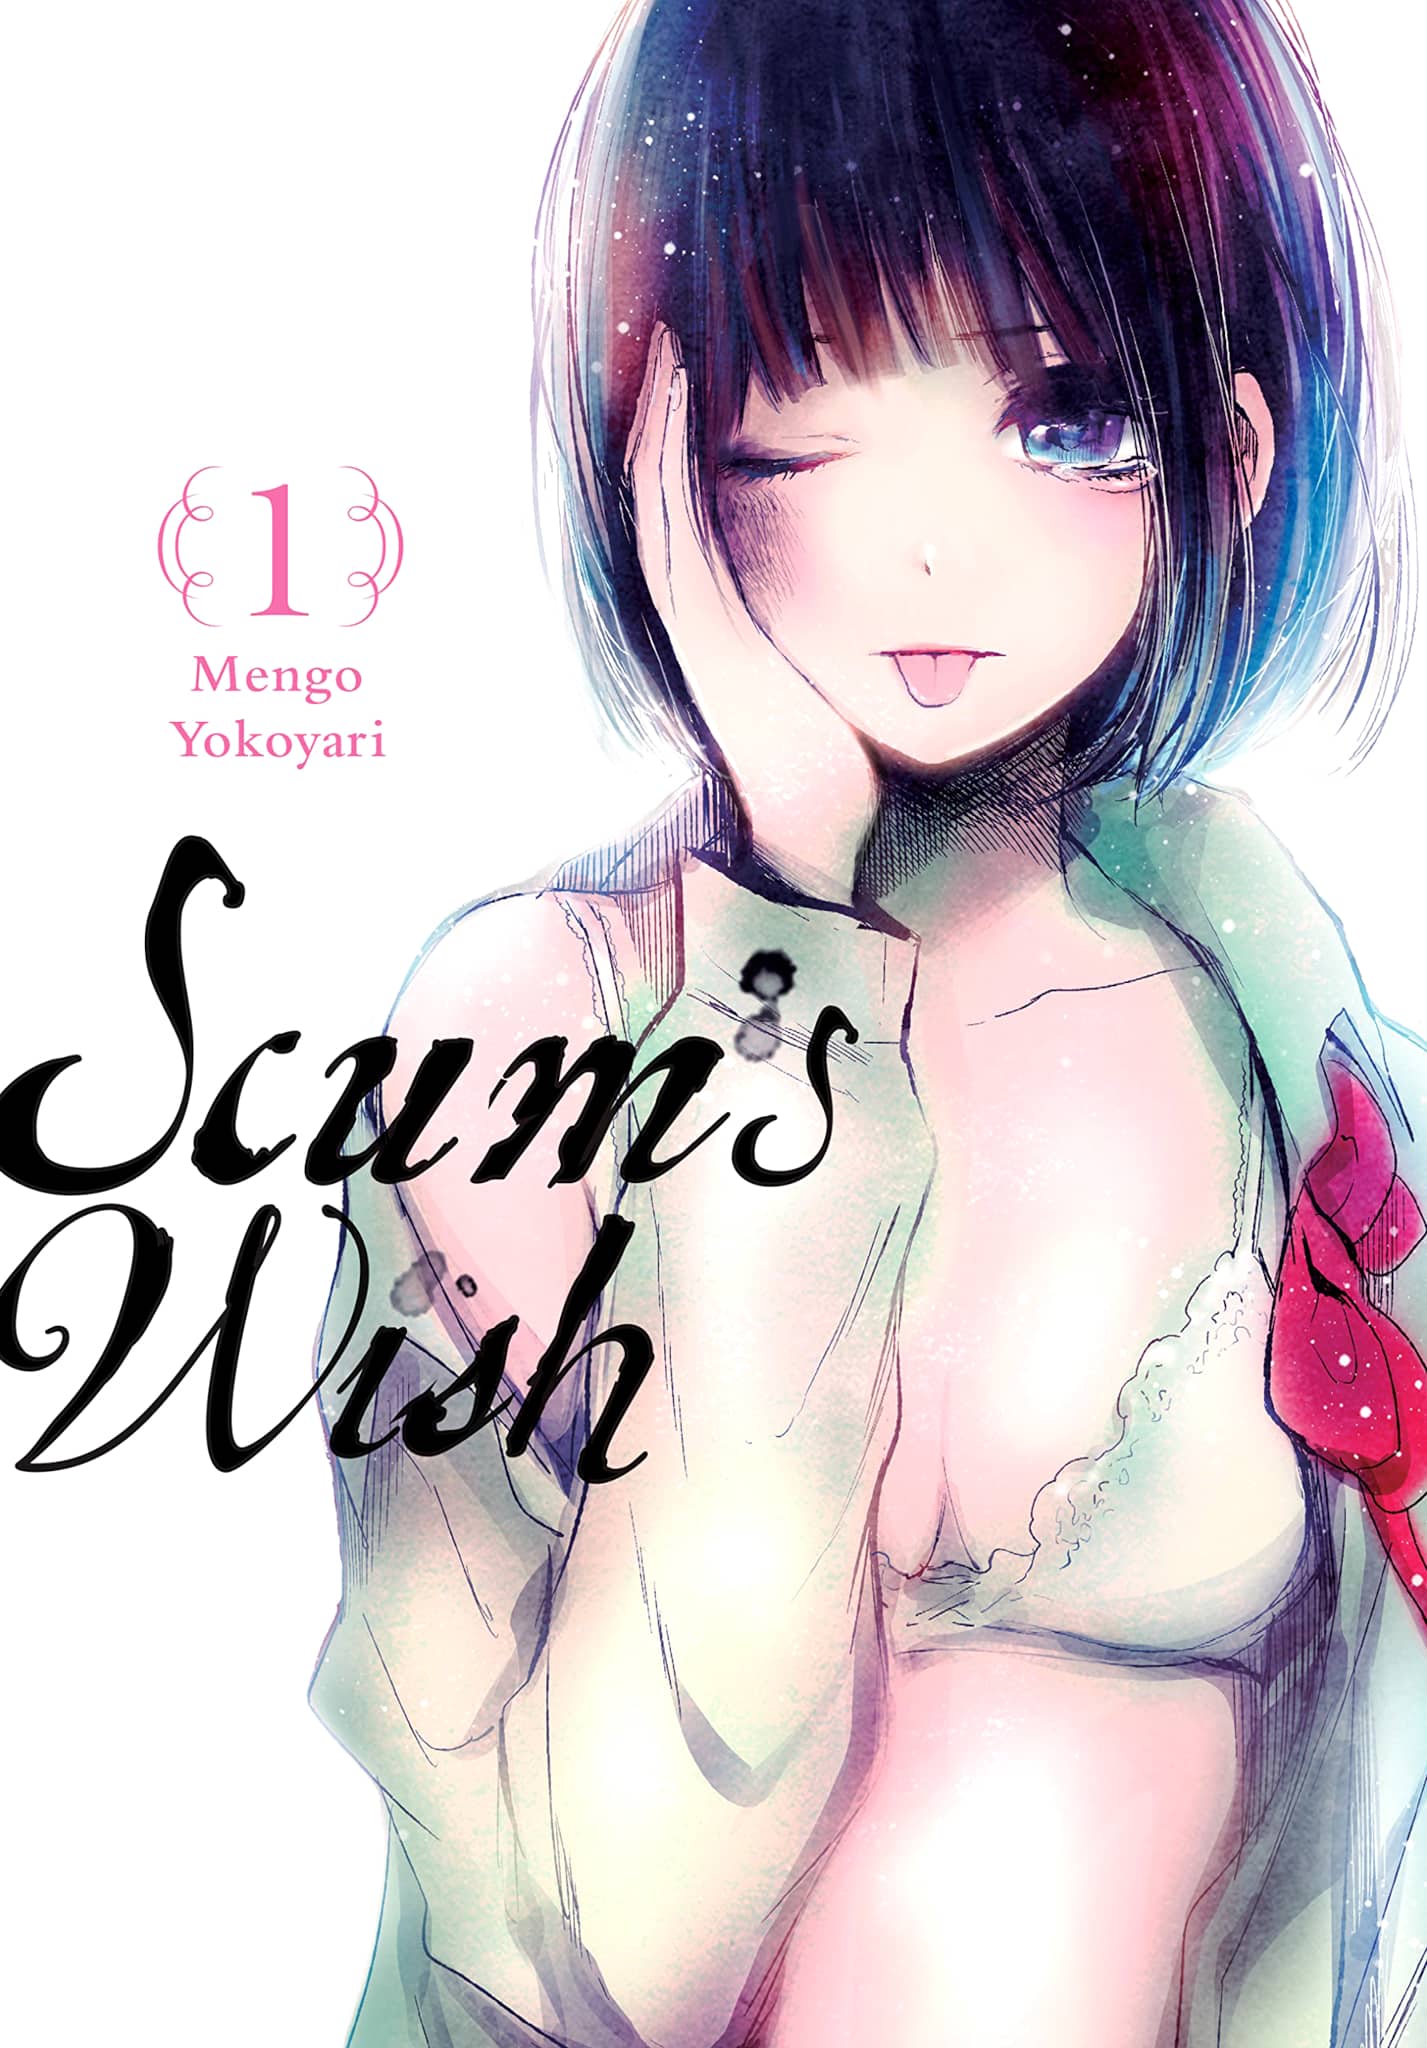 Annonce de la date de sortie du manga Scums Wish en france